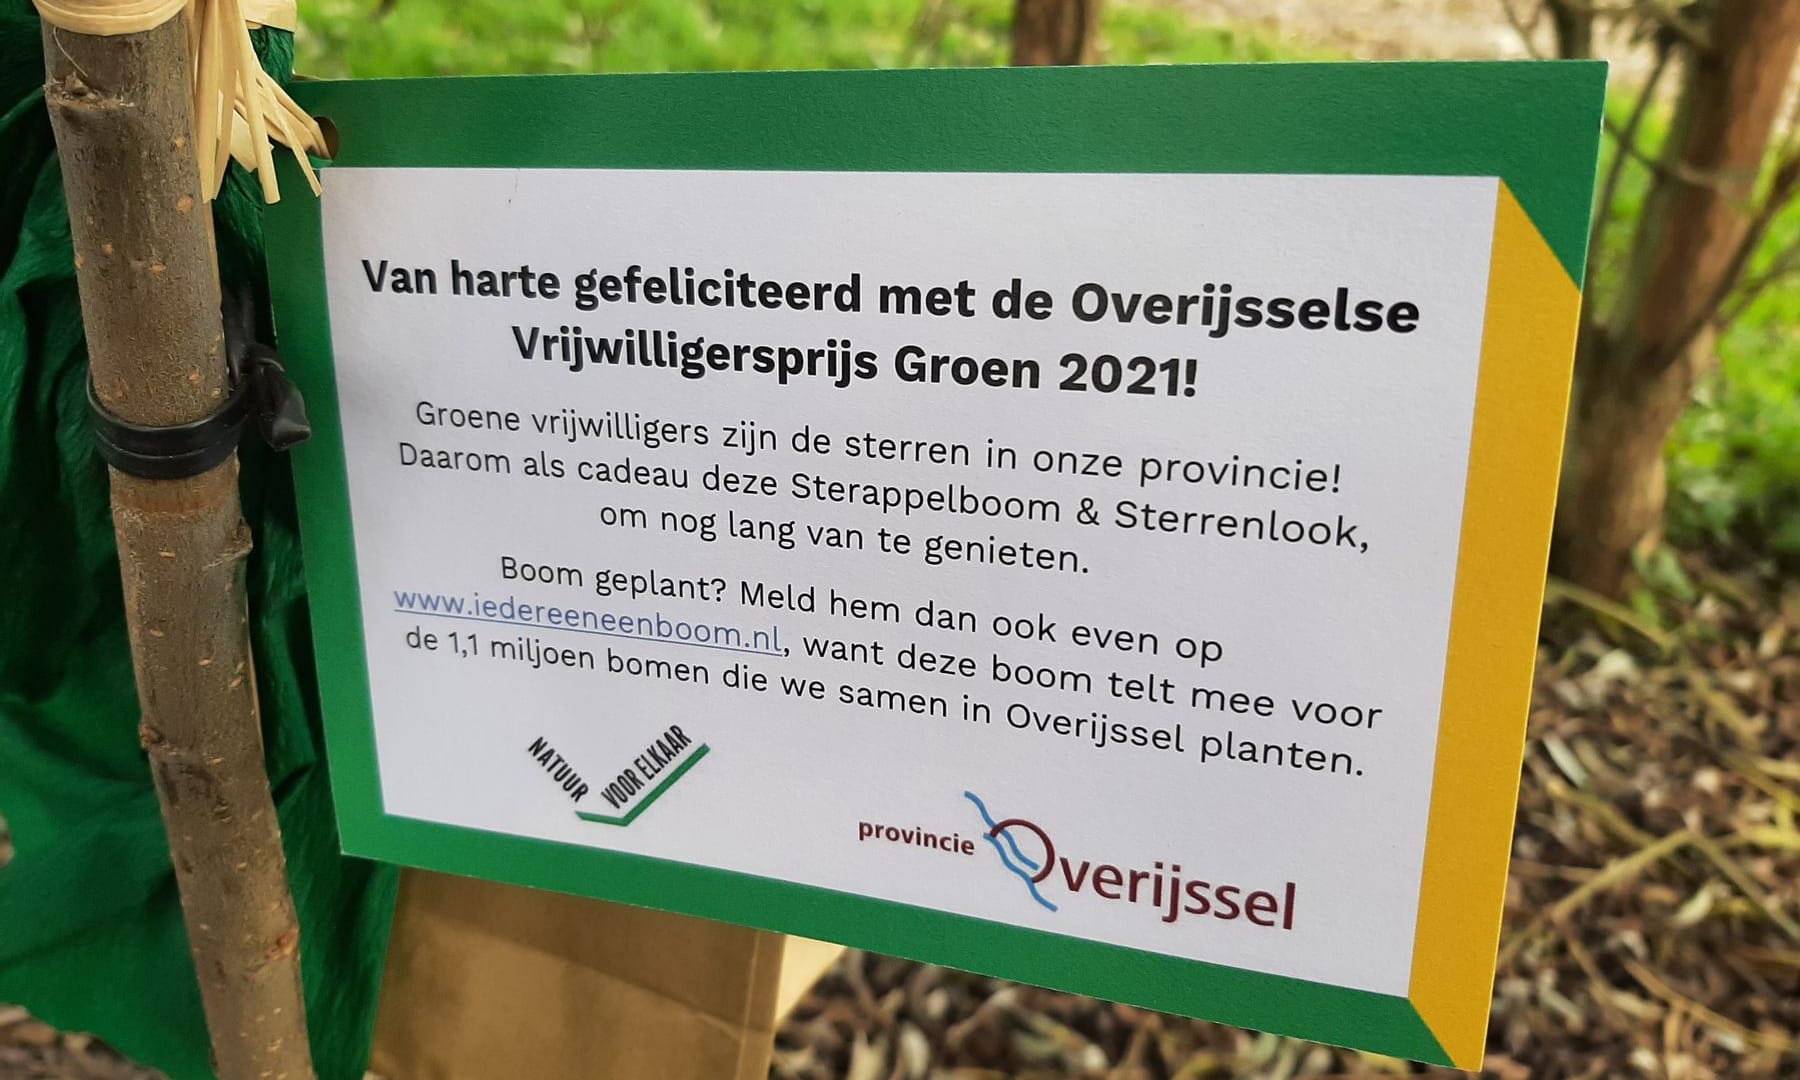 Overijsselse Vrijwilligersprijs Groen 2021